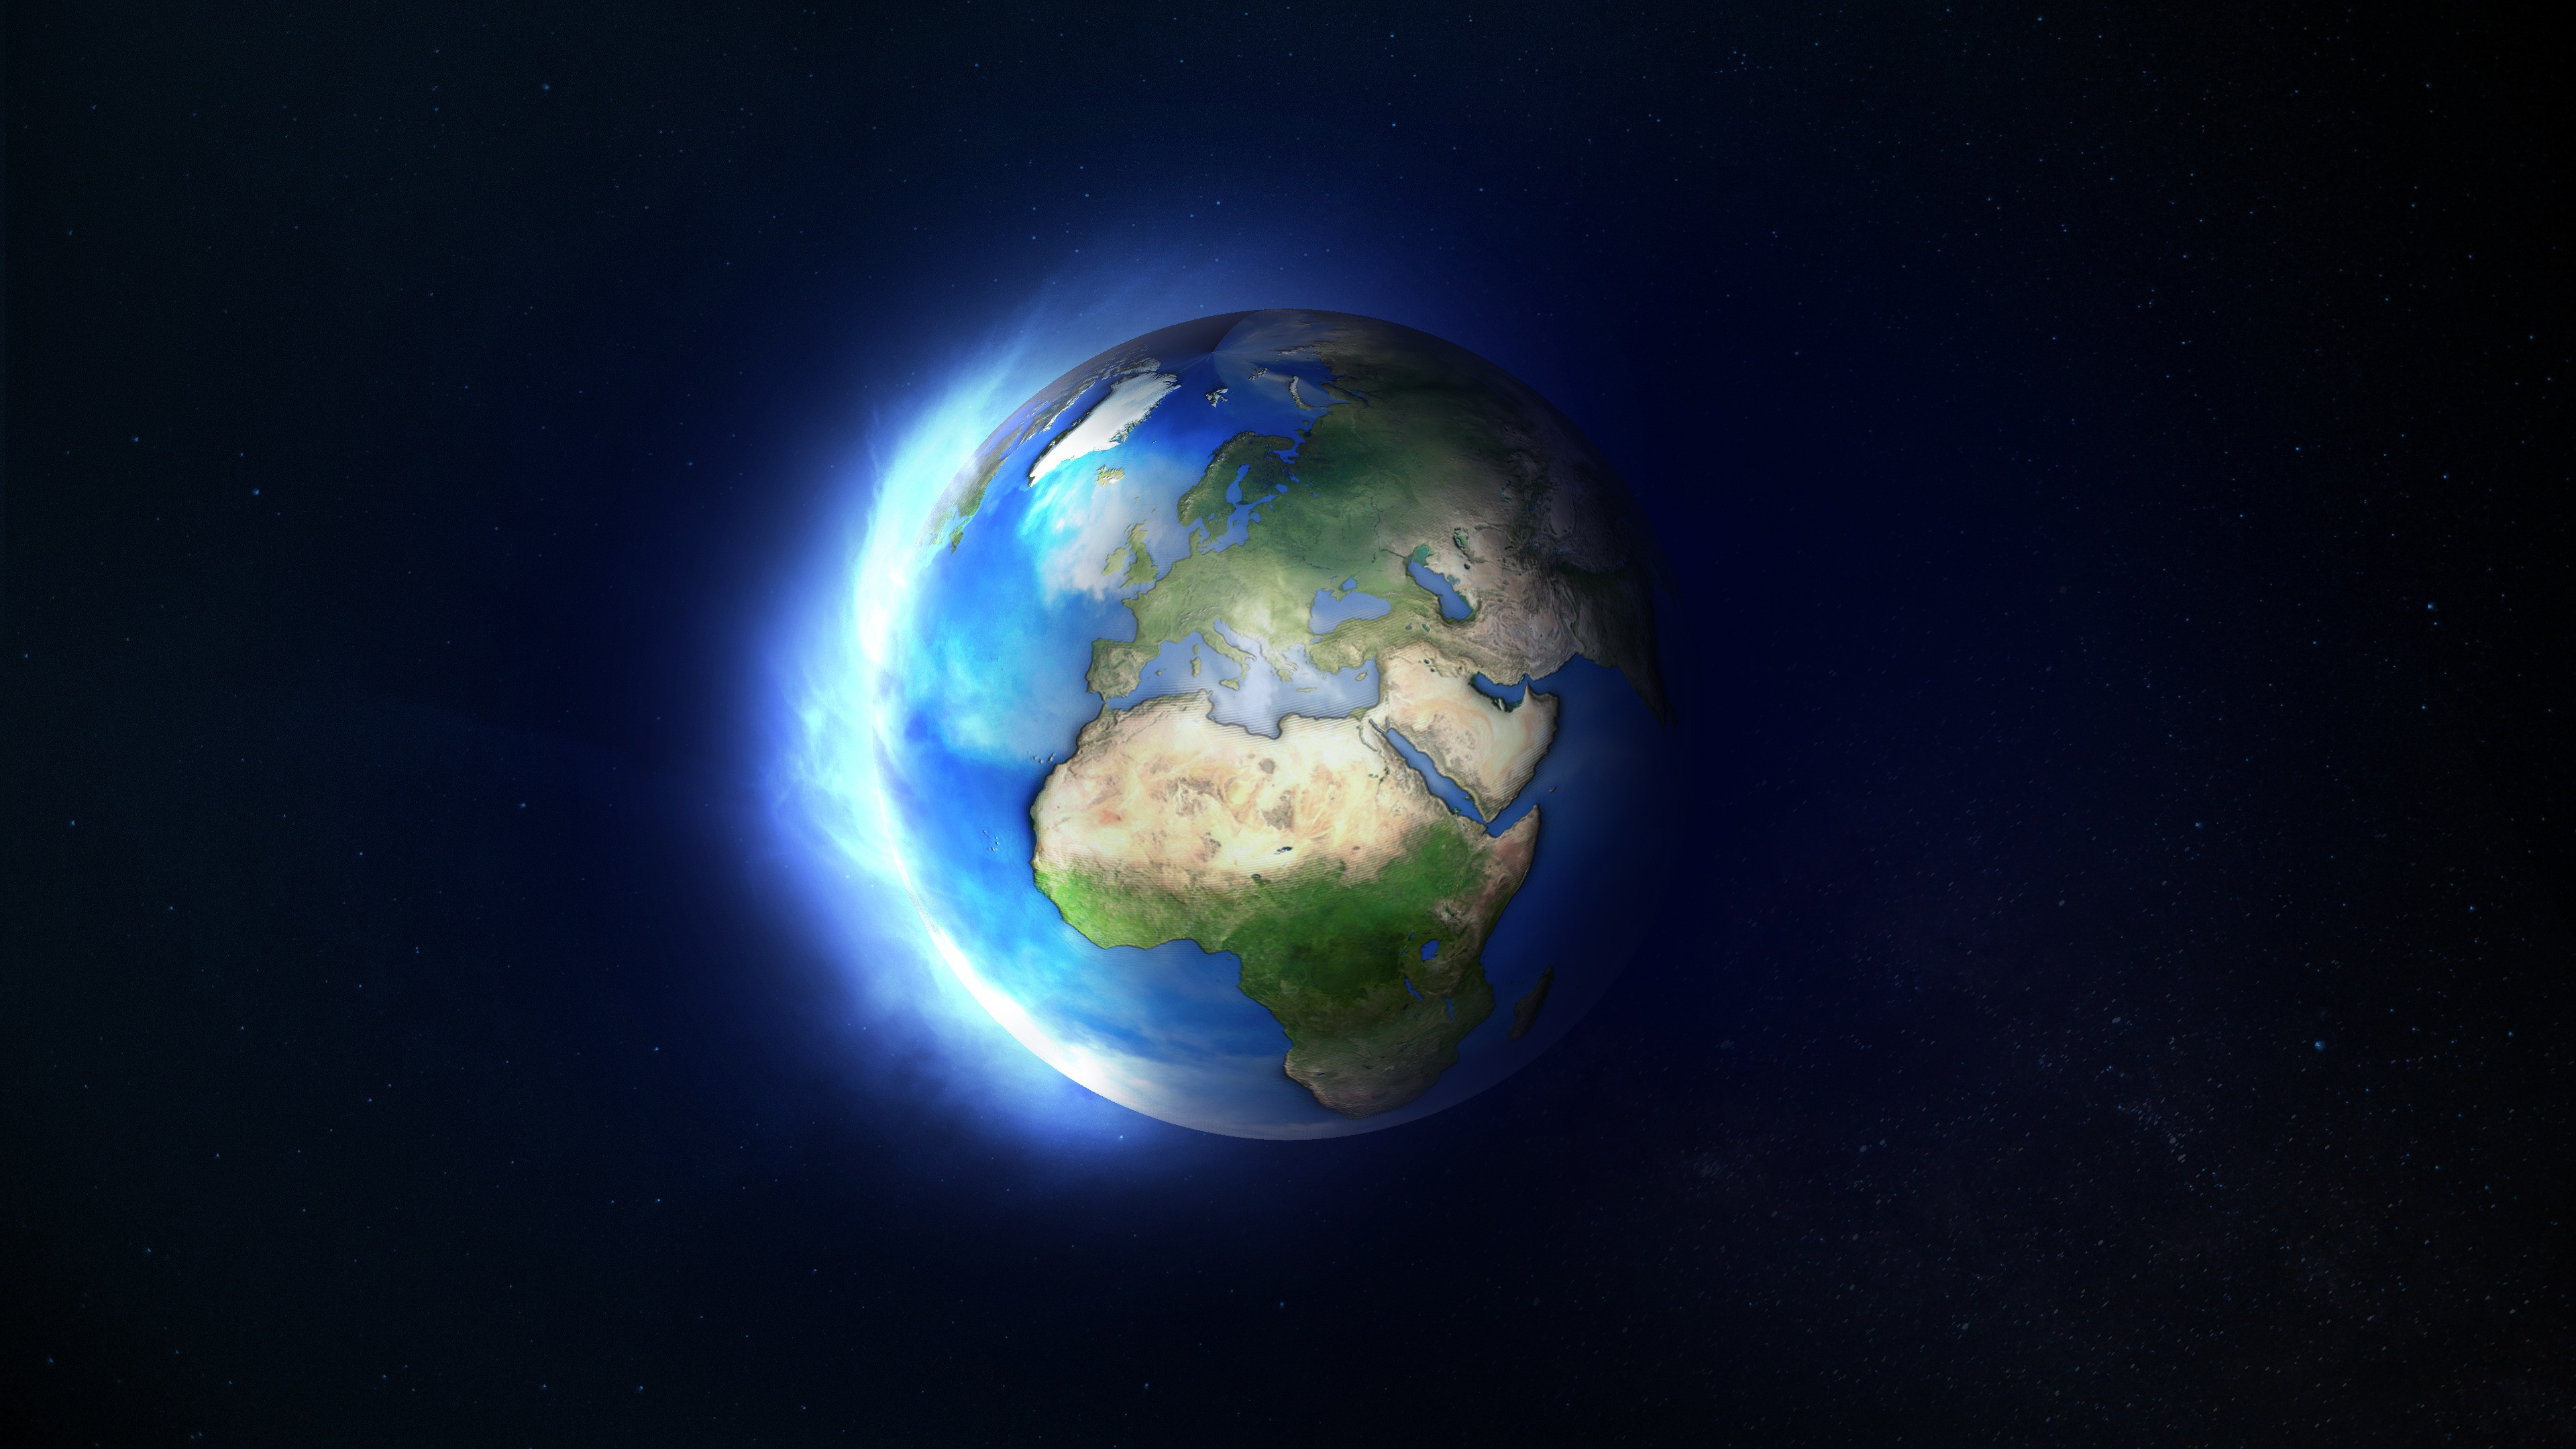 Fondos de pantalla Planeta Tierra estilo caricatura animado